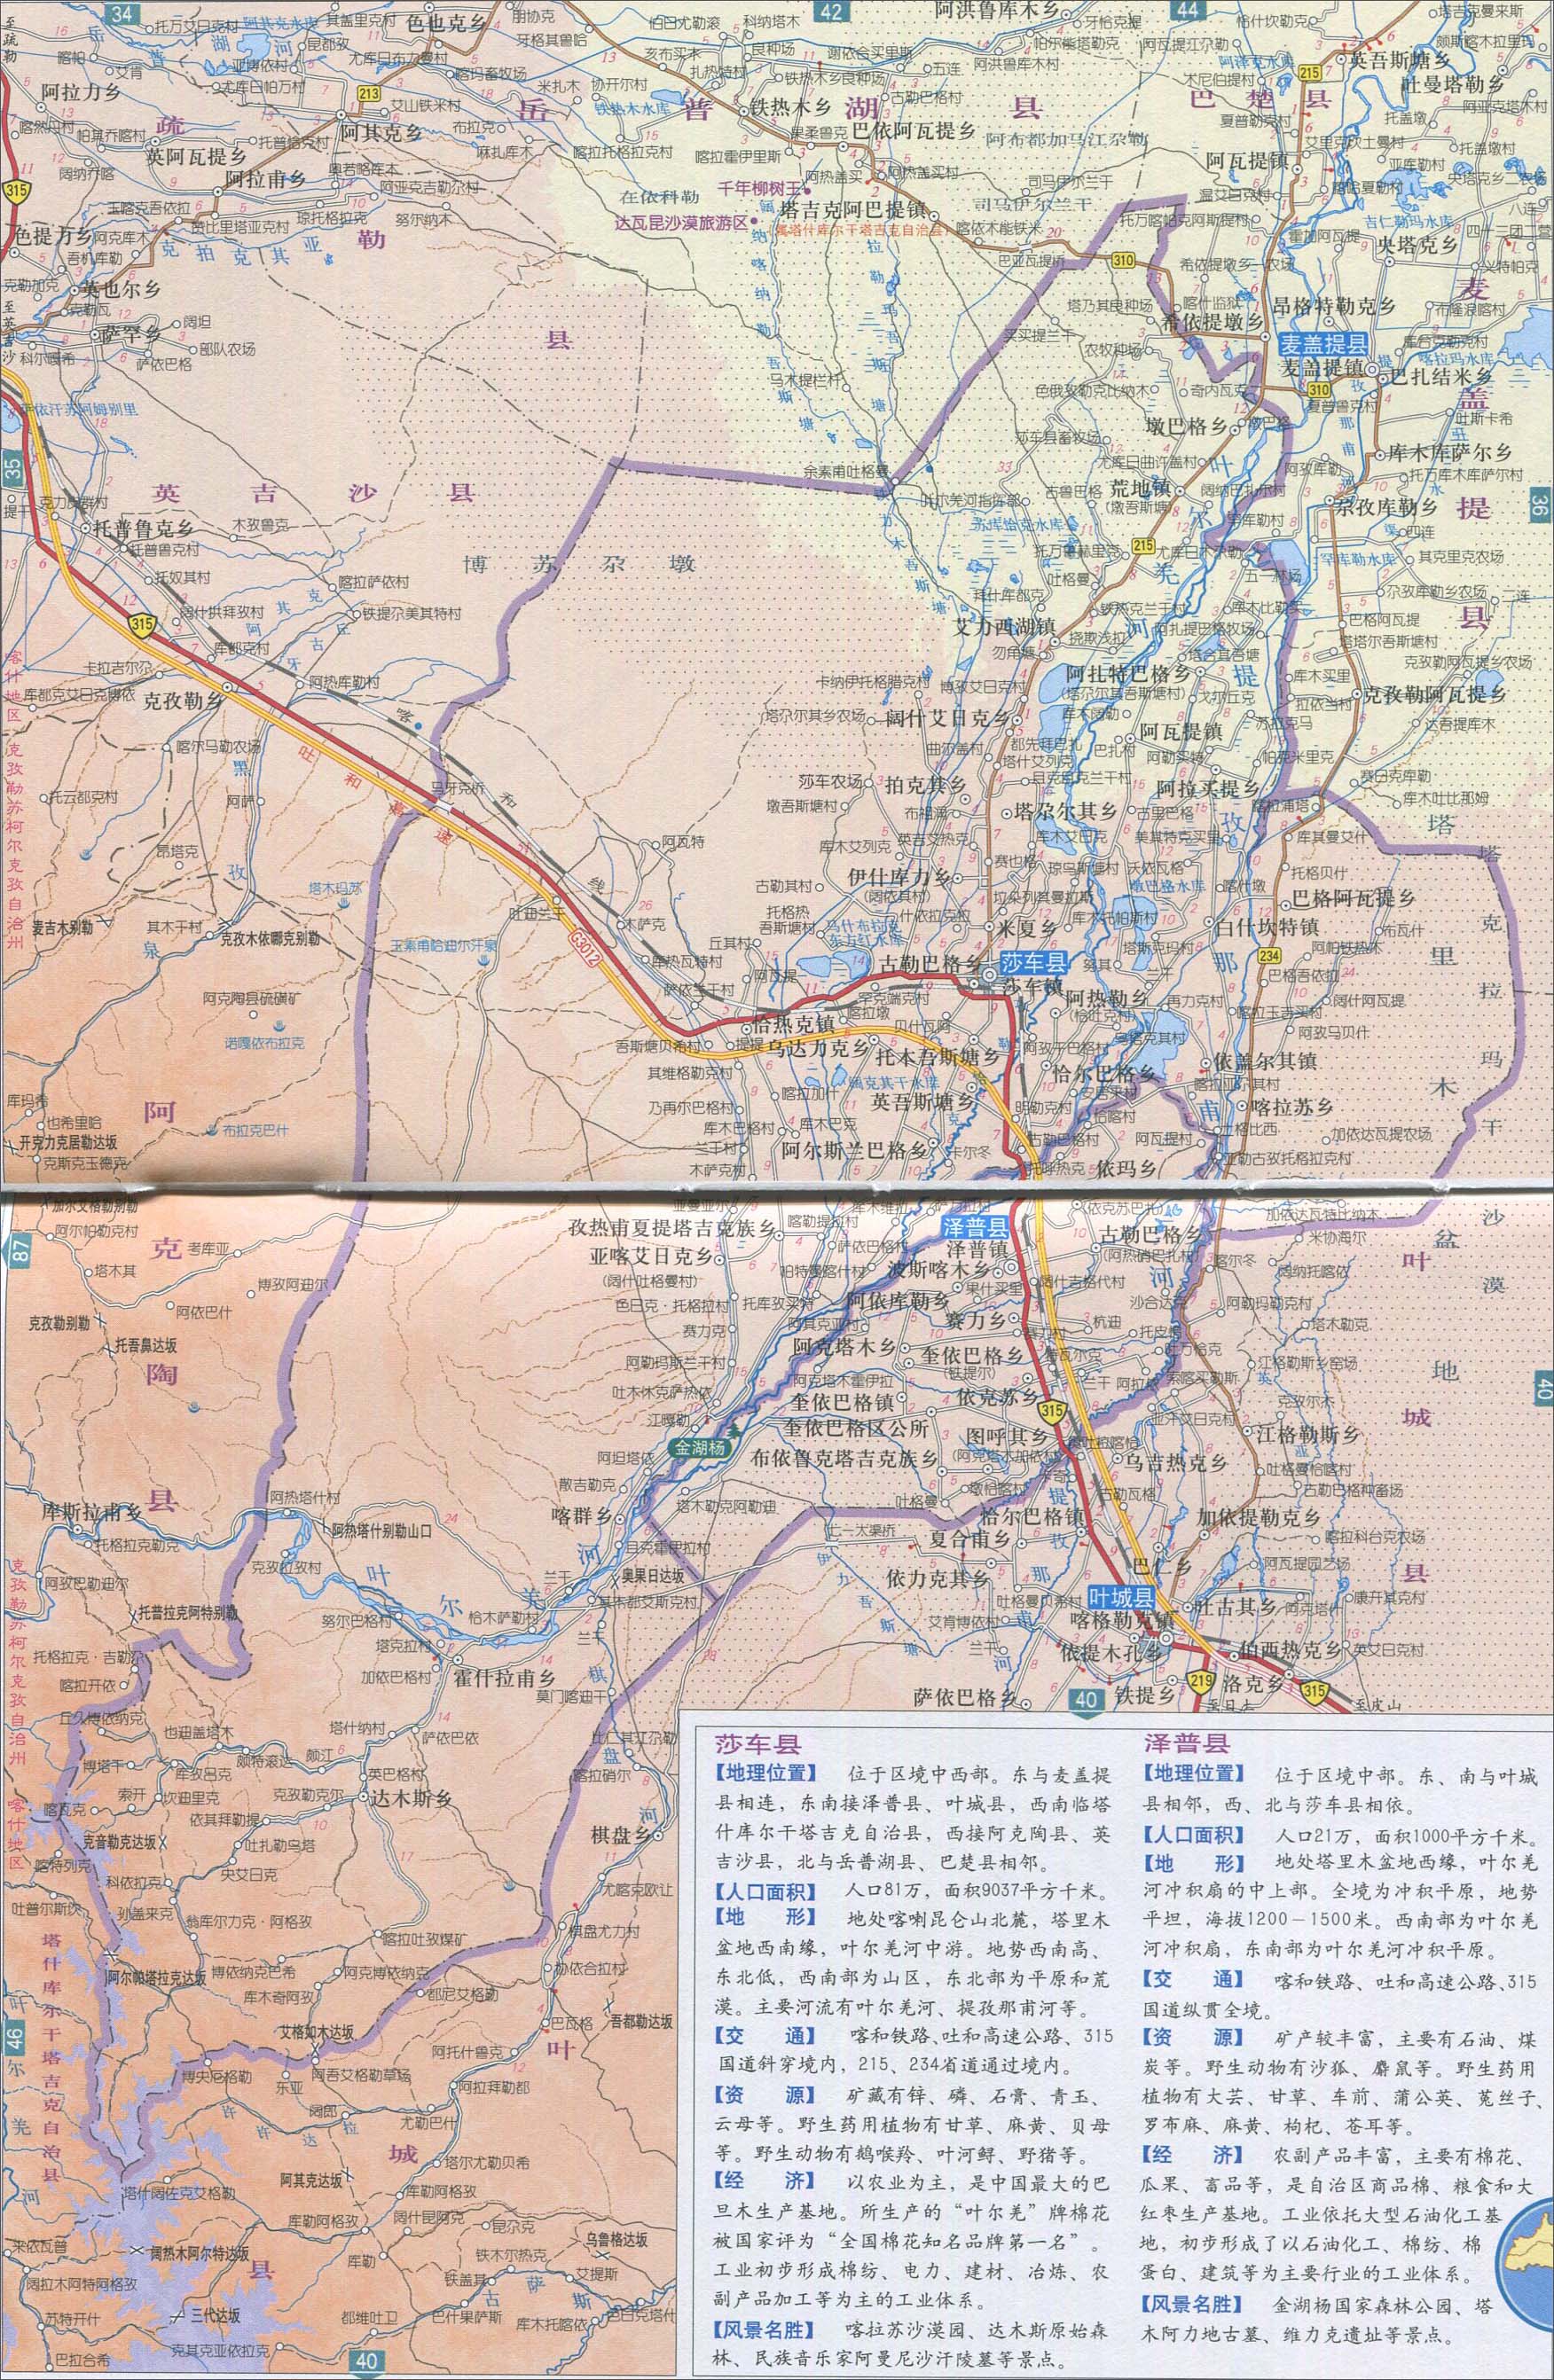 莎车县地图最新版(高清大图)图片